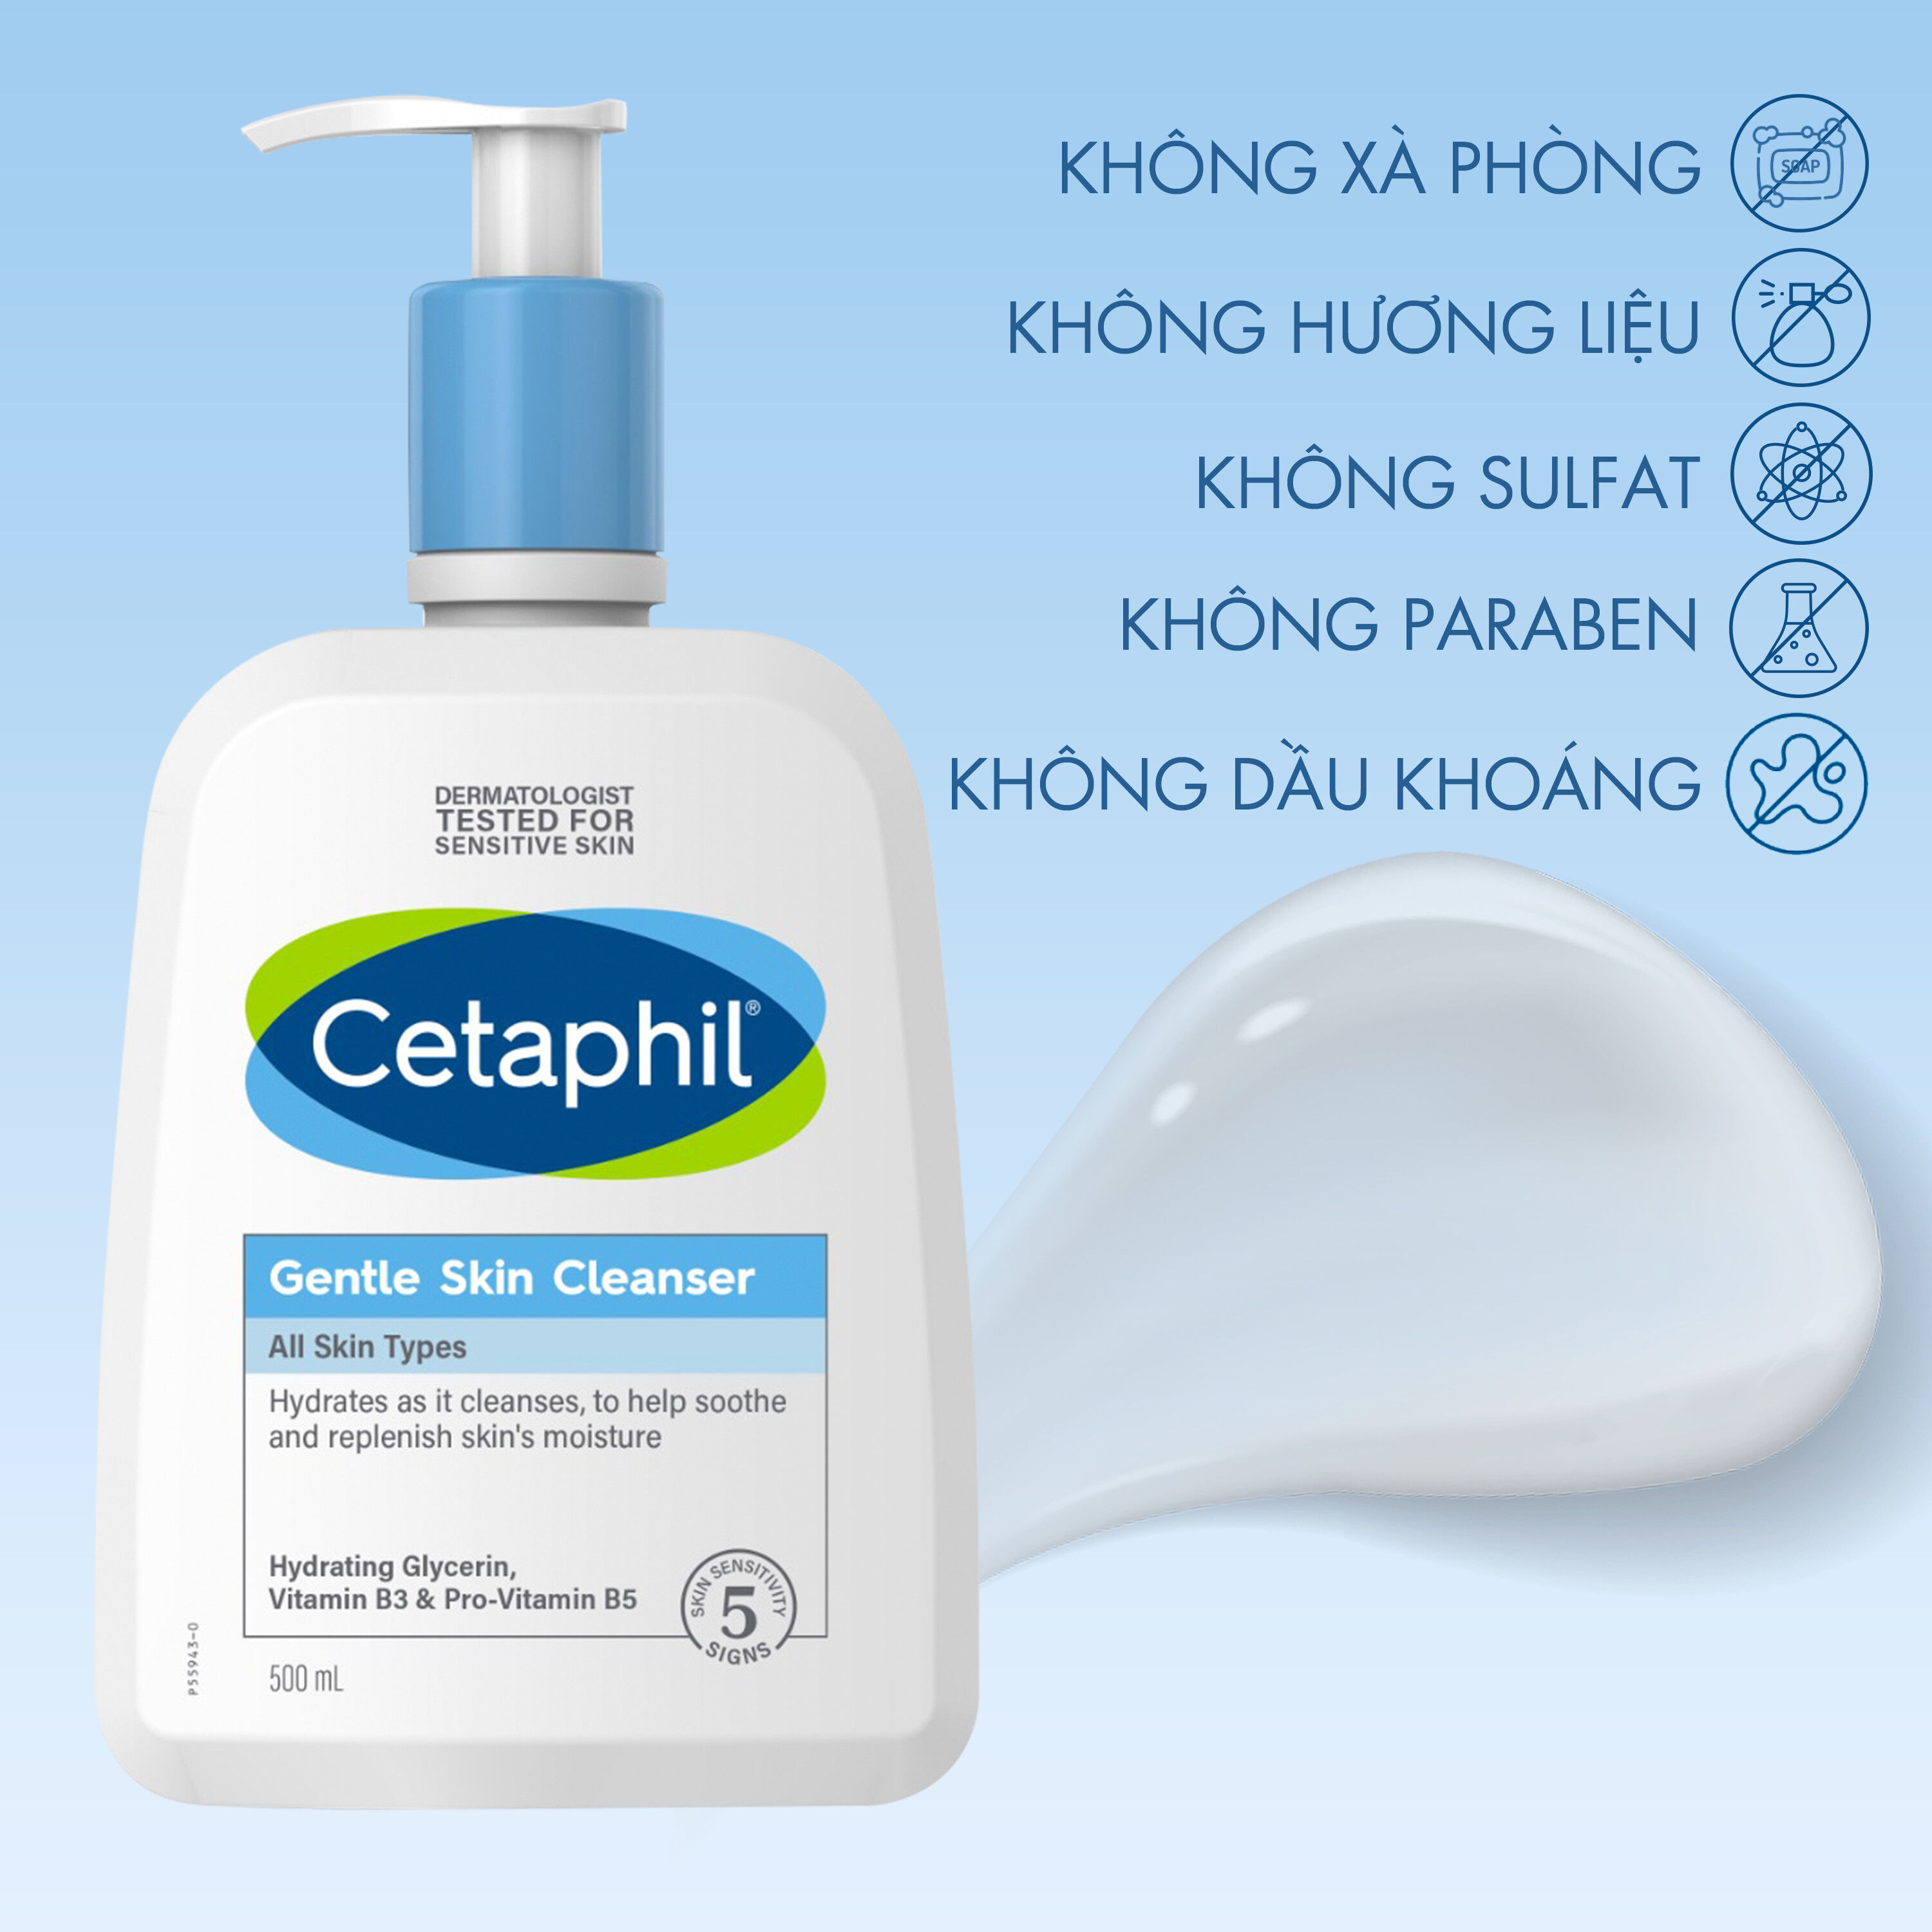 Cetaphil Gentle Skin Cleanser với công thức mới giúp sản sinh Ceramide mang hiệu quả bảo vệ làn da vượt trội